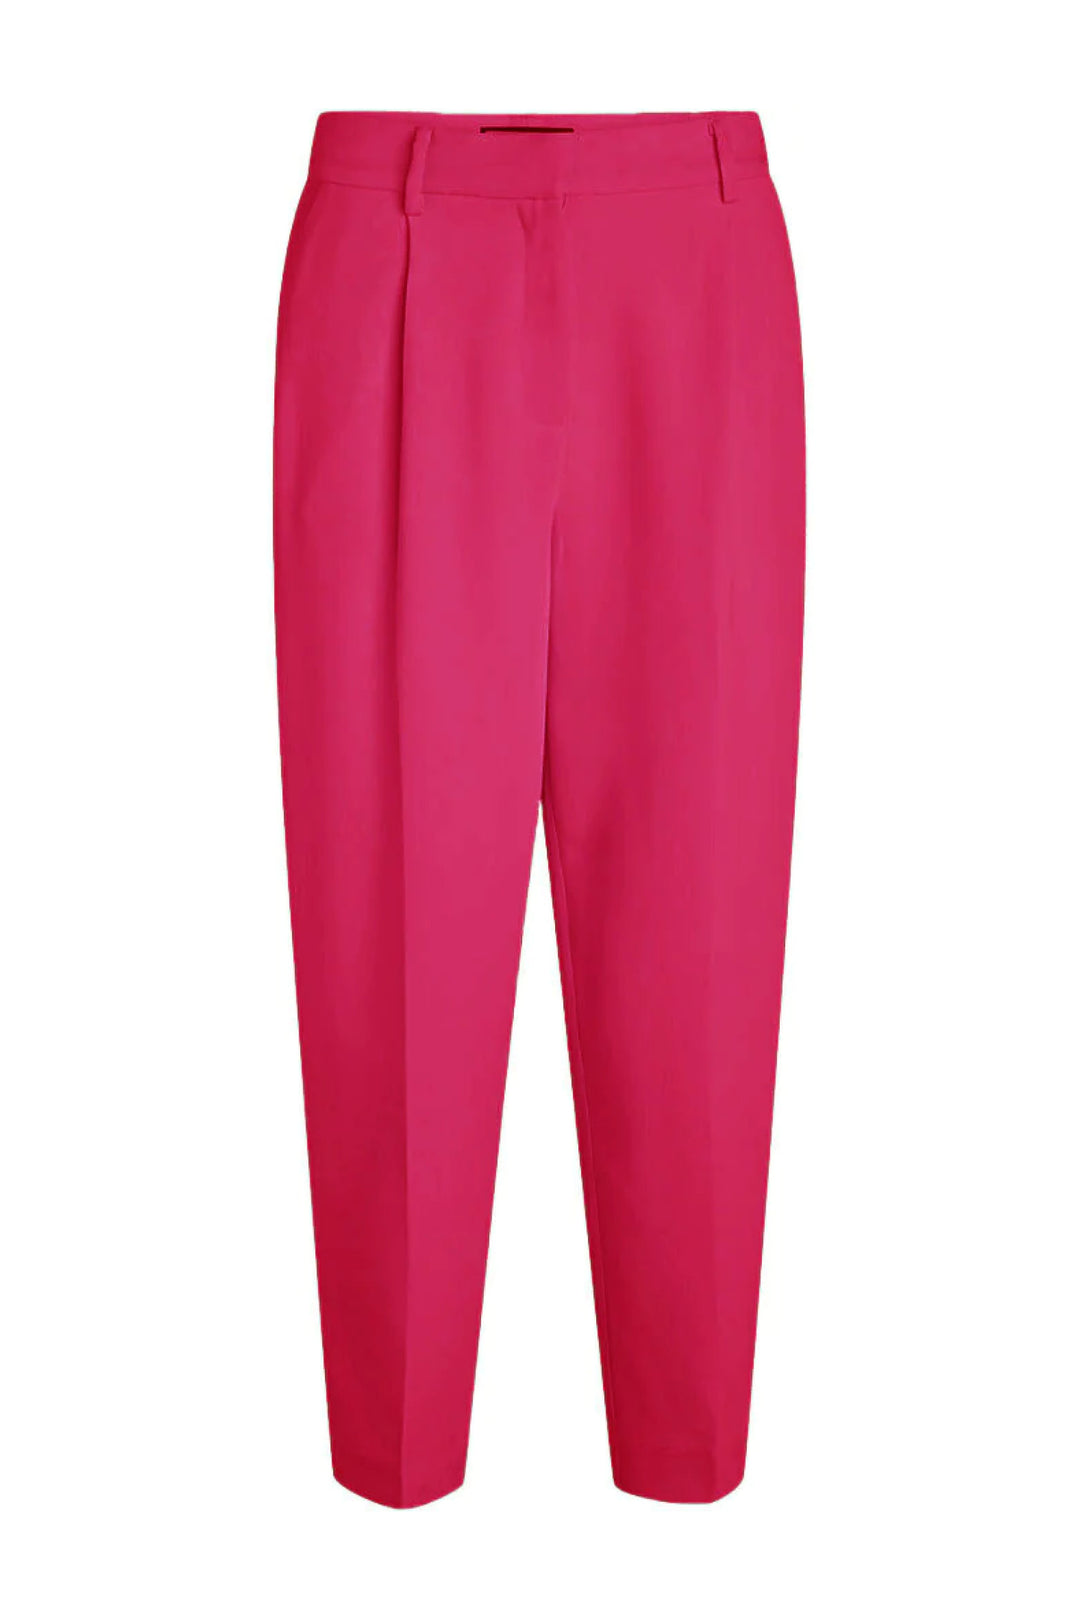 Bruuns Bazaar Women CindySusBBDagny pants Pants Virtual pink